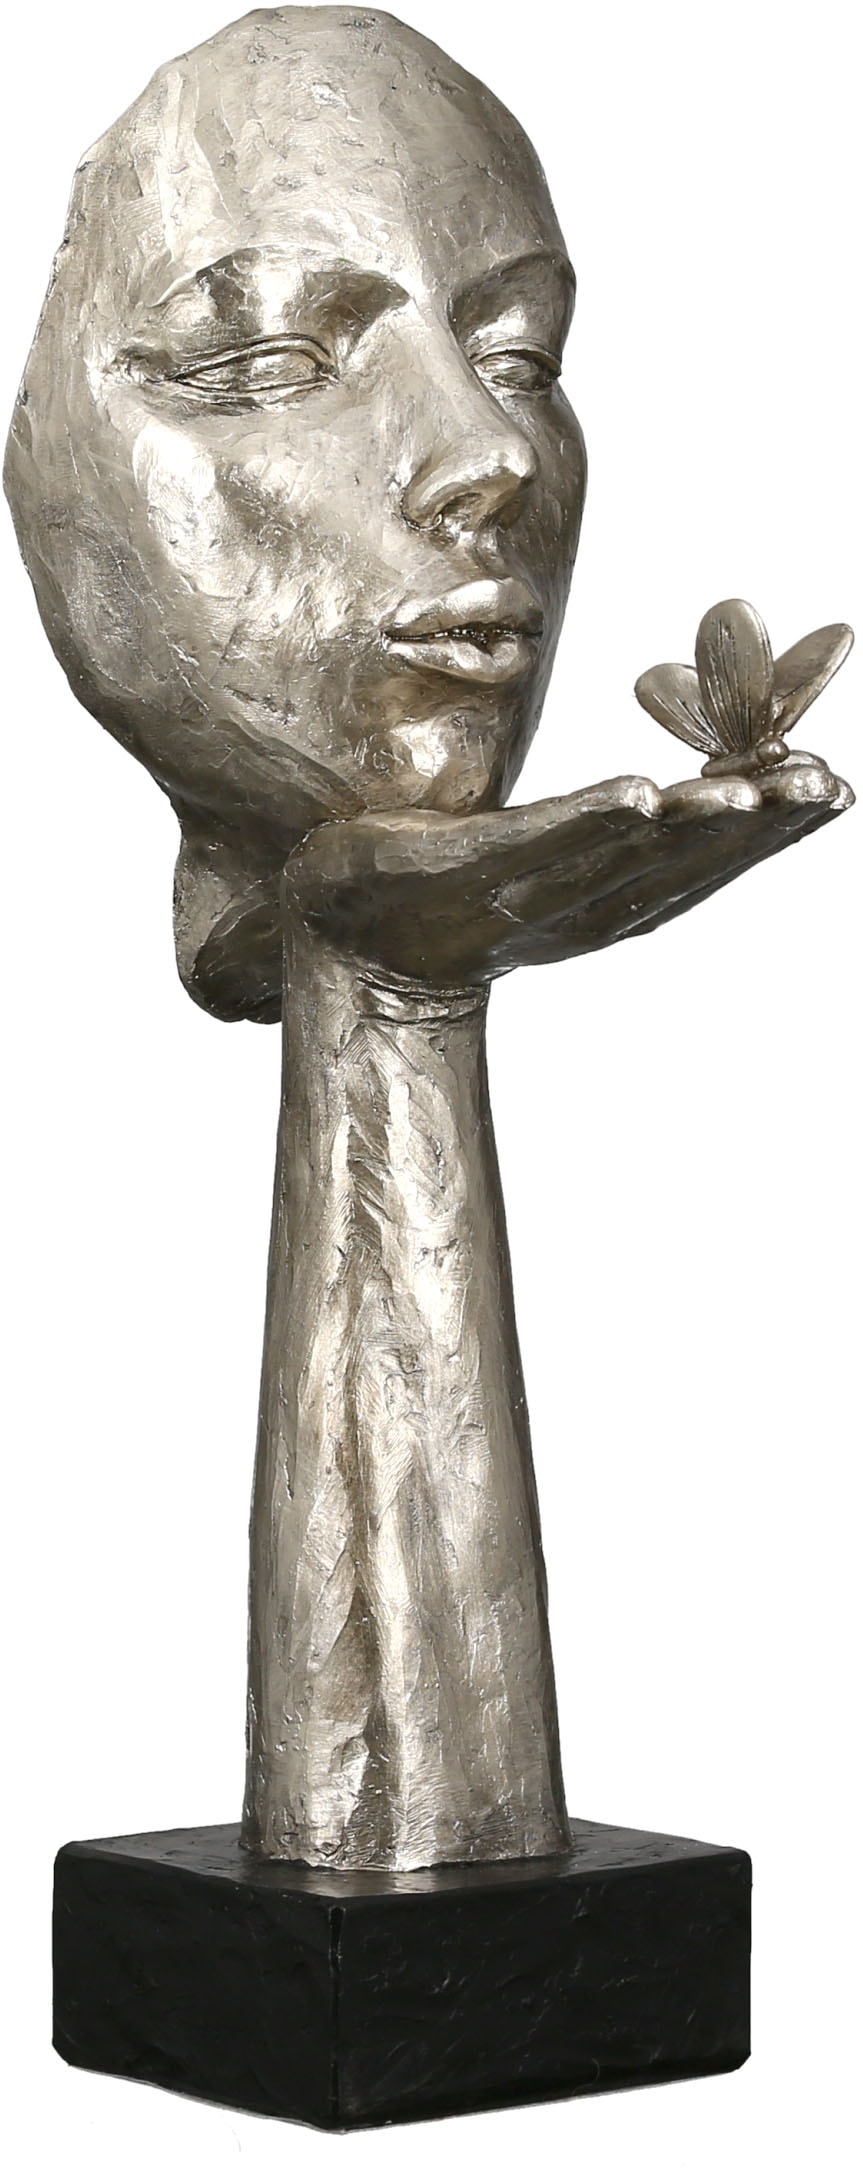 GILDE Dekofigur »Skulptur Desire, Polyresin St.), Shop im antikfinish«, Online (1 silberfarben, OTTO